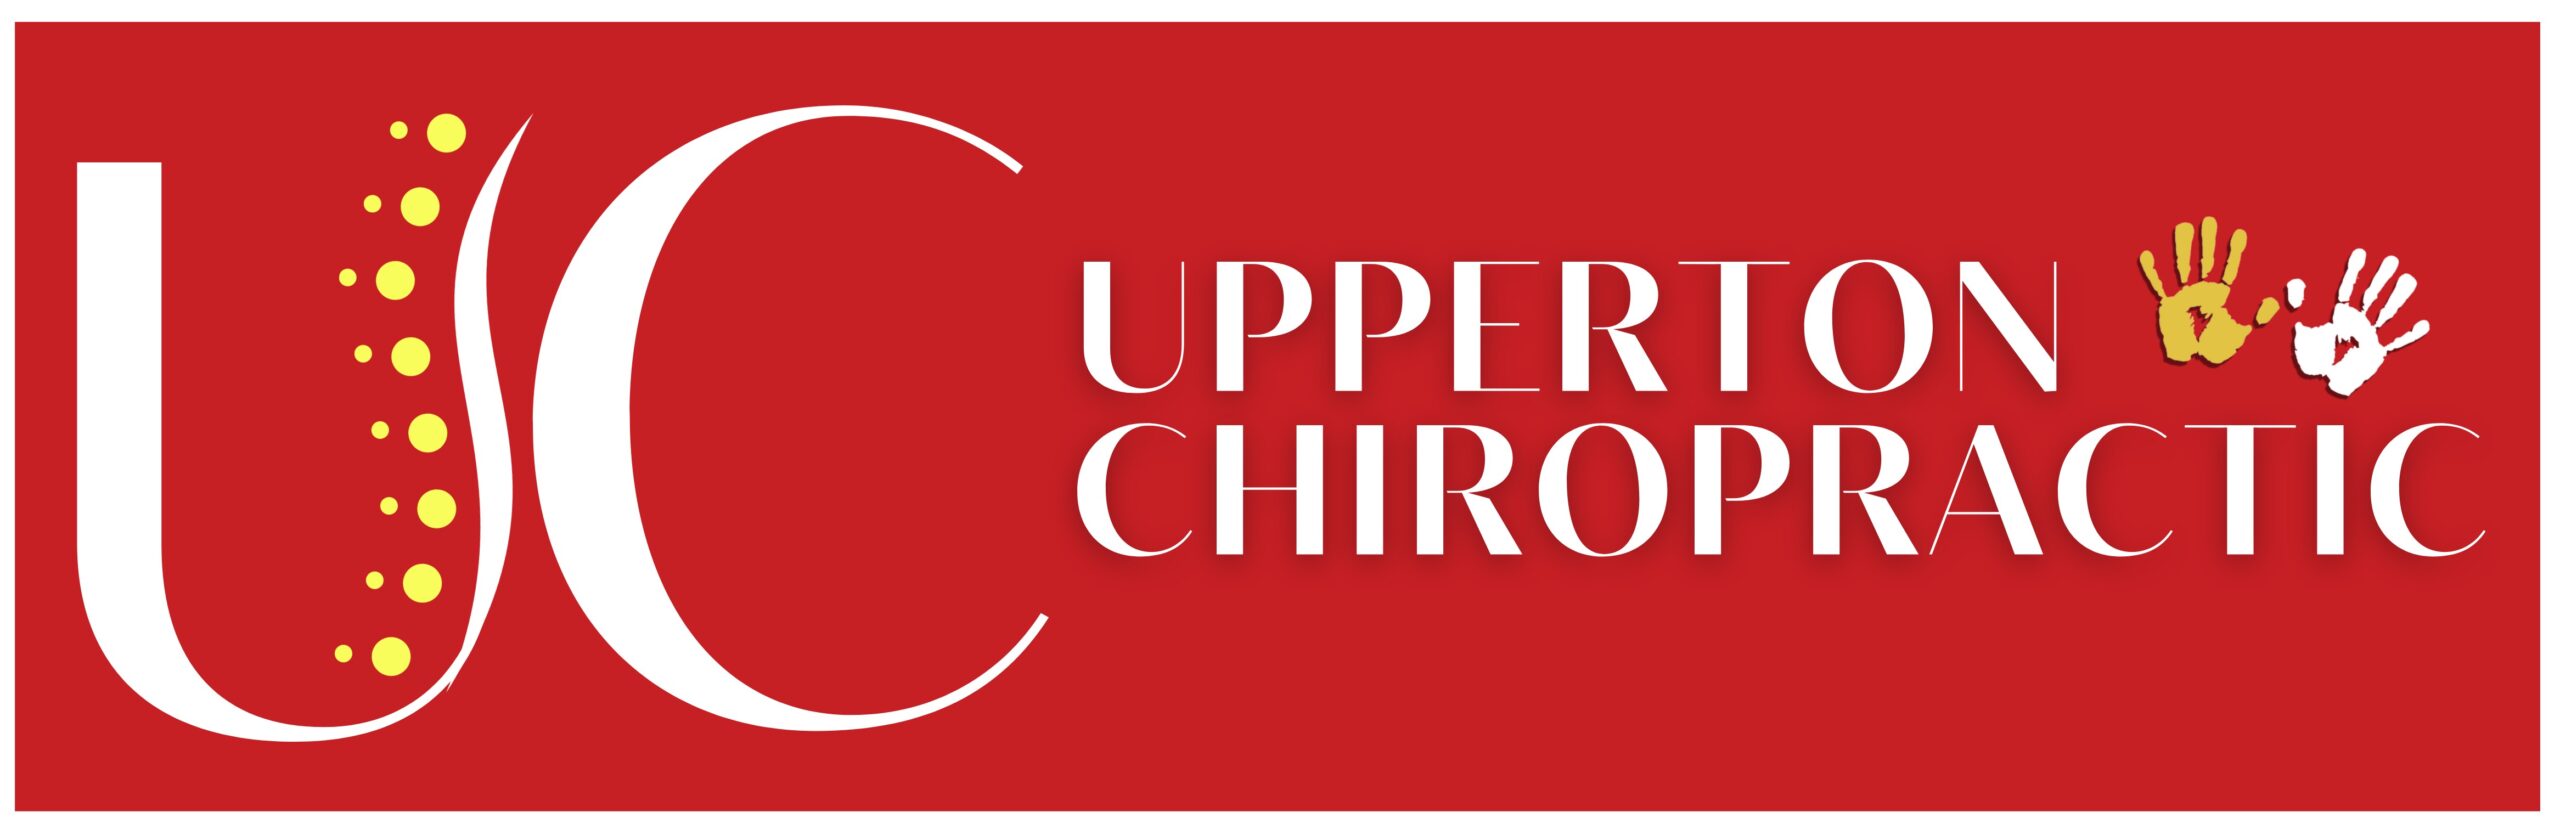 Upperton Chiropractic